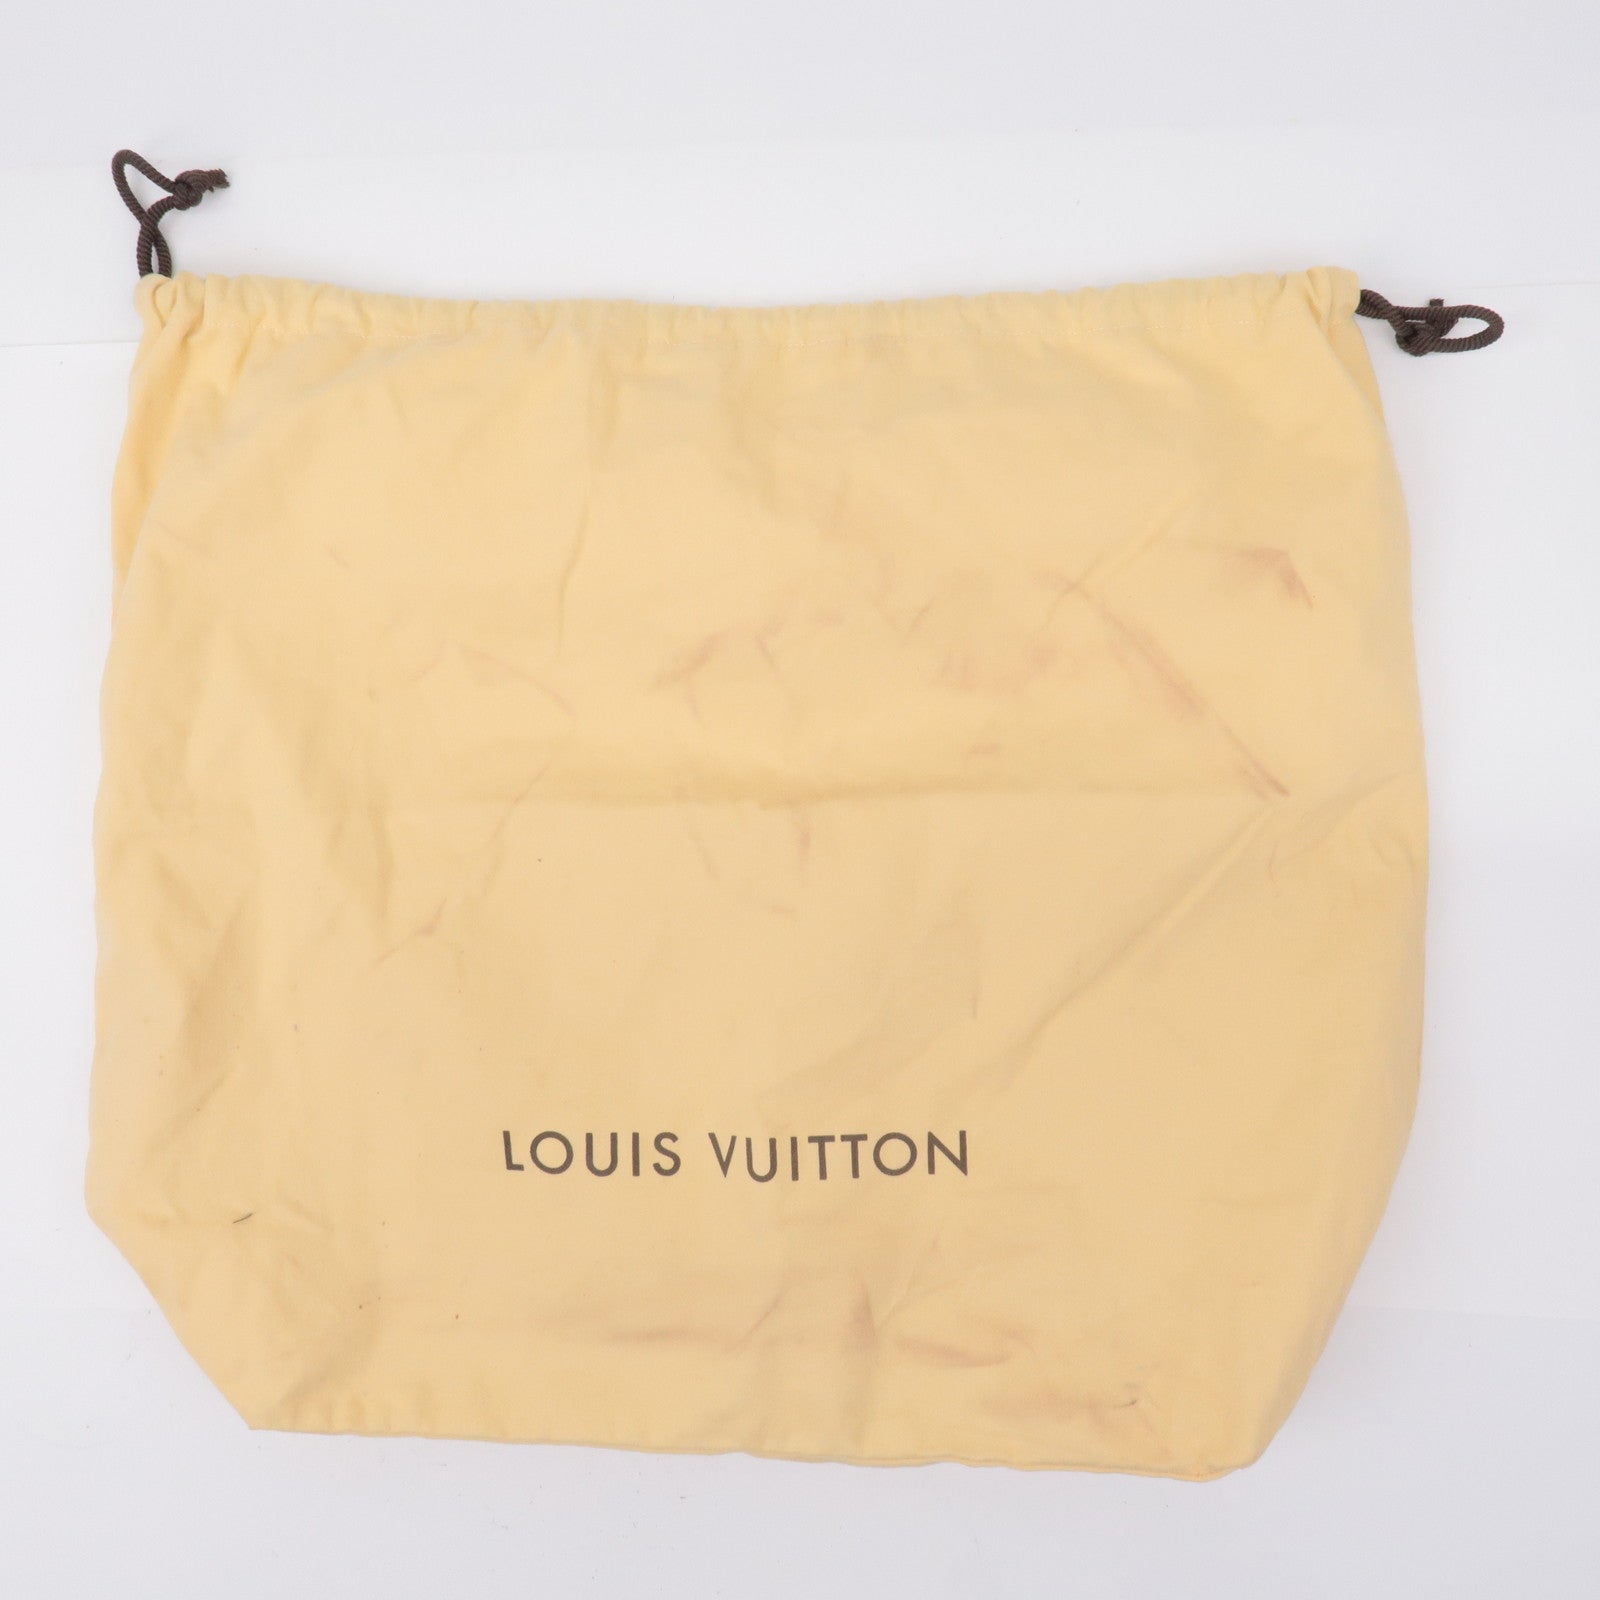 Louis Vuitton Speedy 22 Bag Organizer